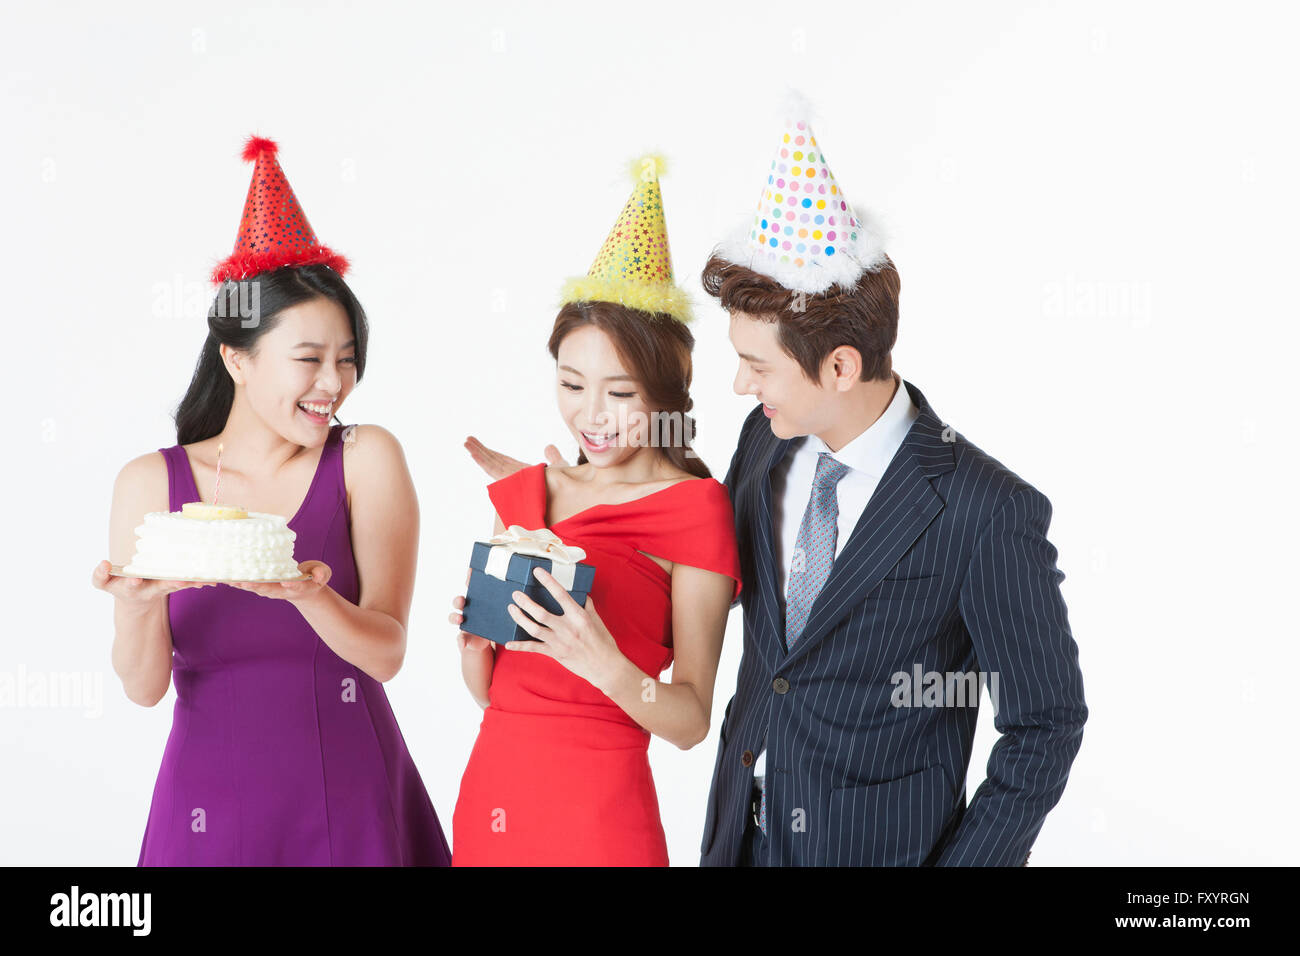 Porträt von drei jungen Leuten mit einer Torte und einer Geschenkbox auf party Stockfoto